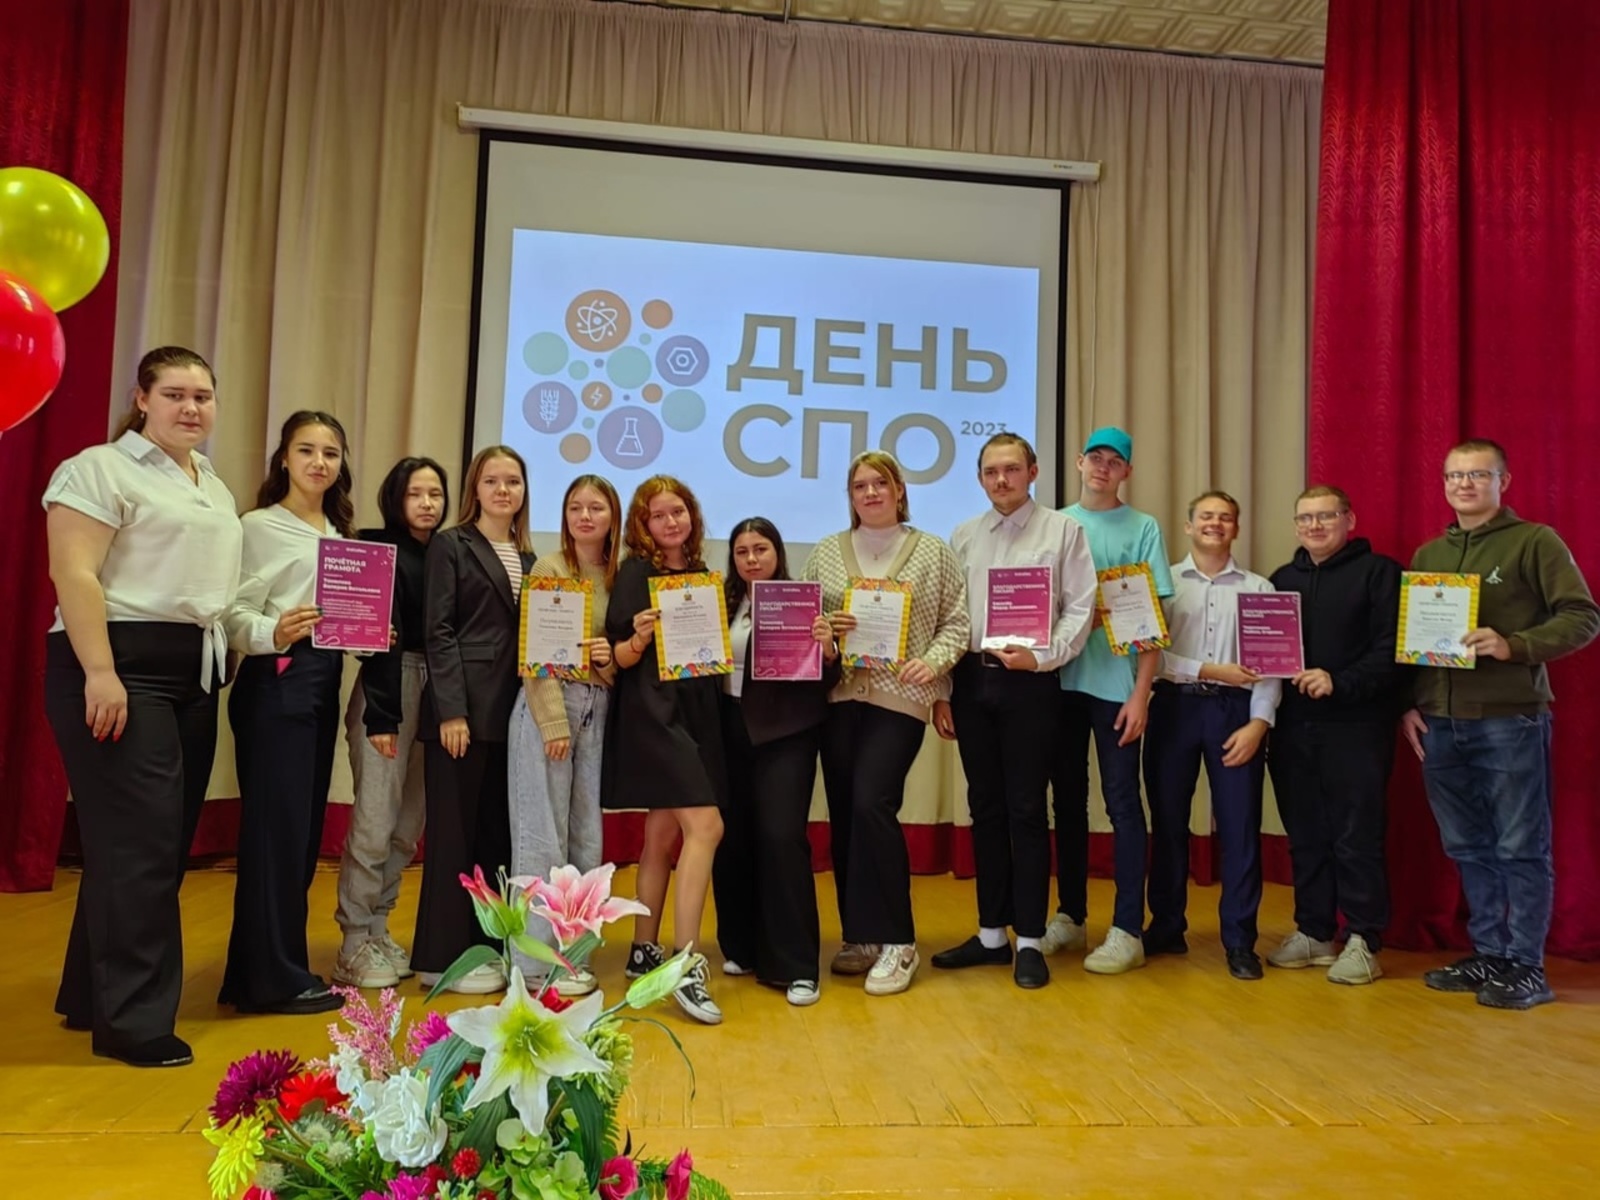 Сегодня в России отмечается День среднего профессионального образования